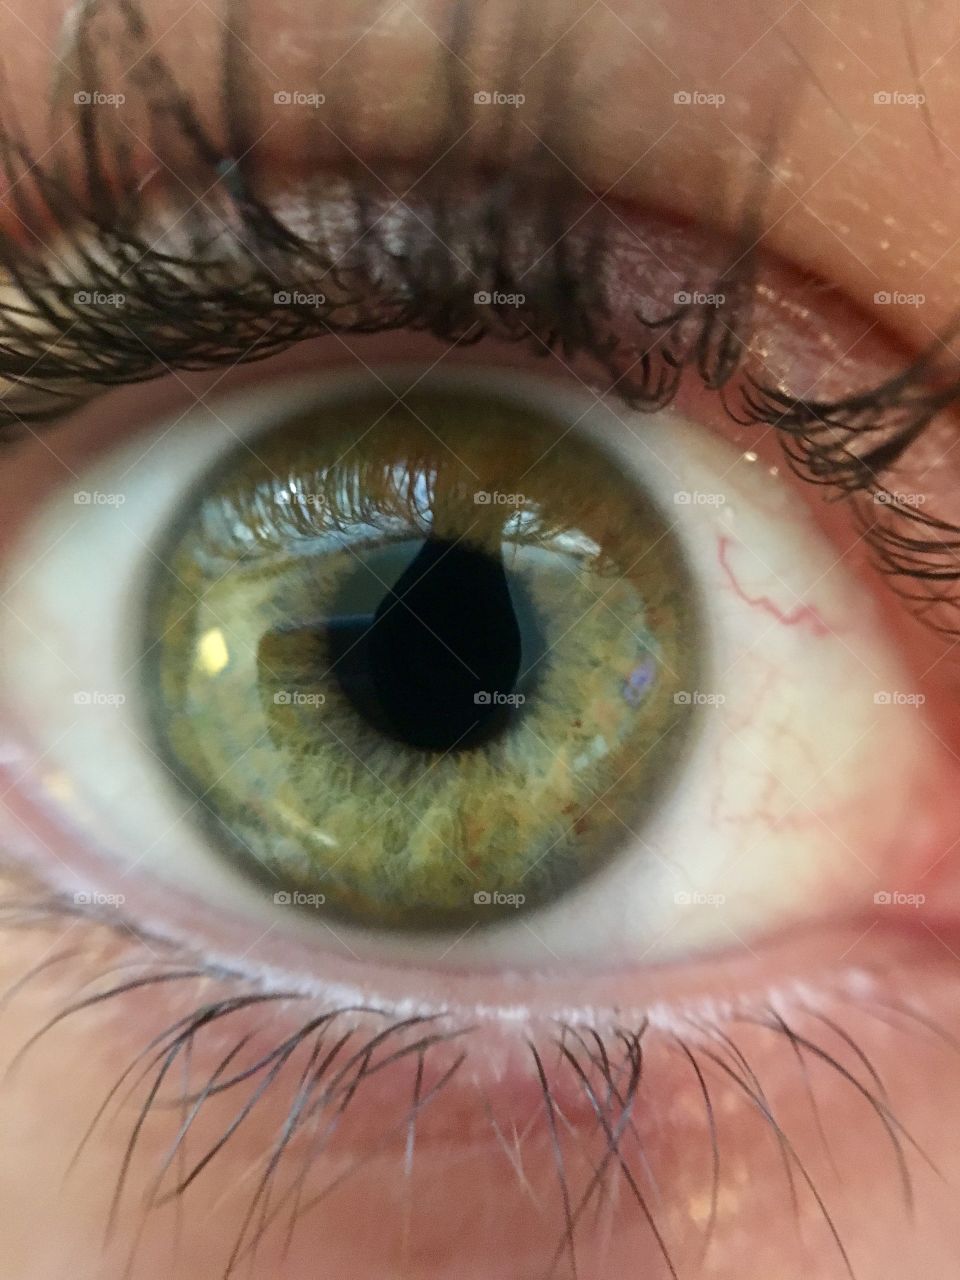 The eye has it